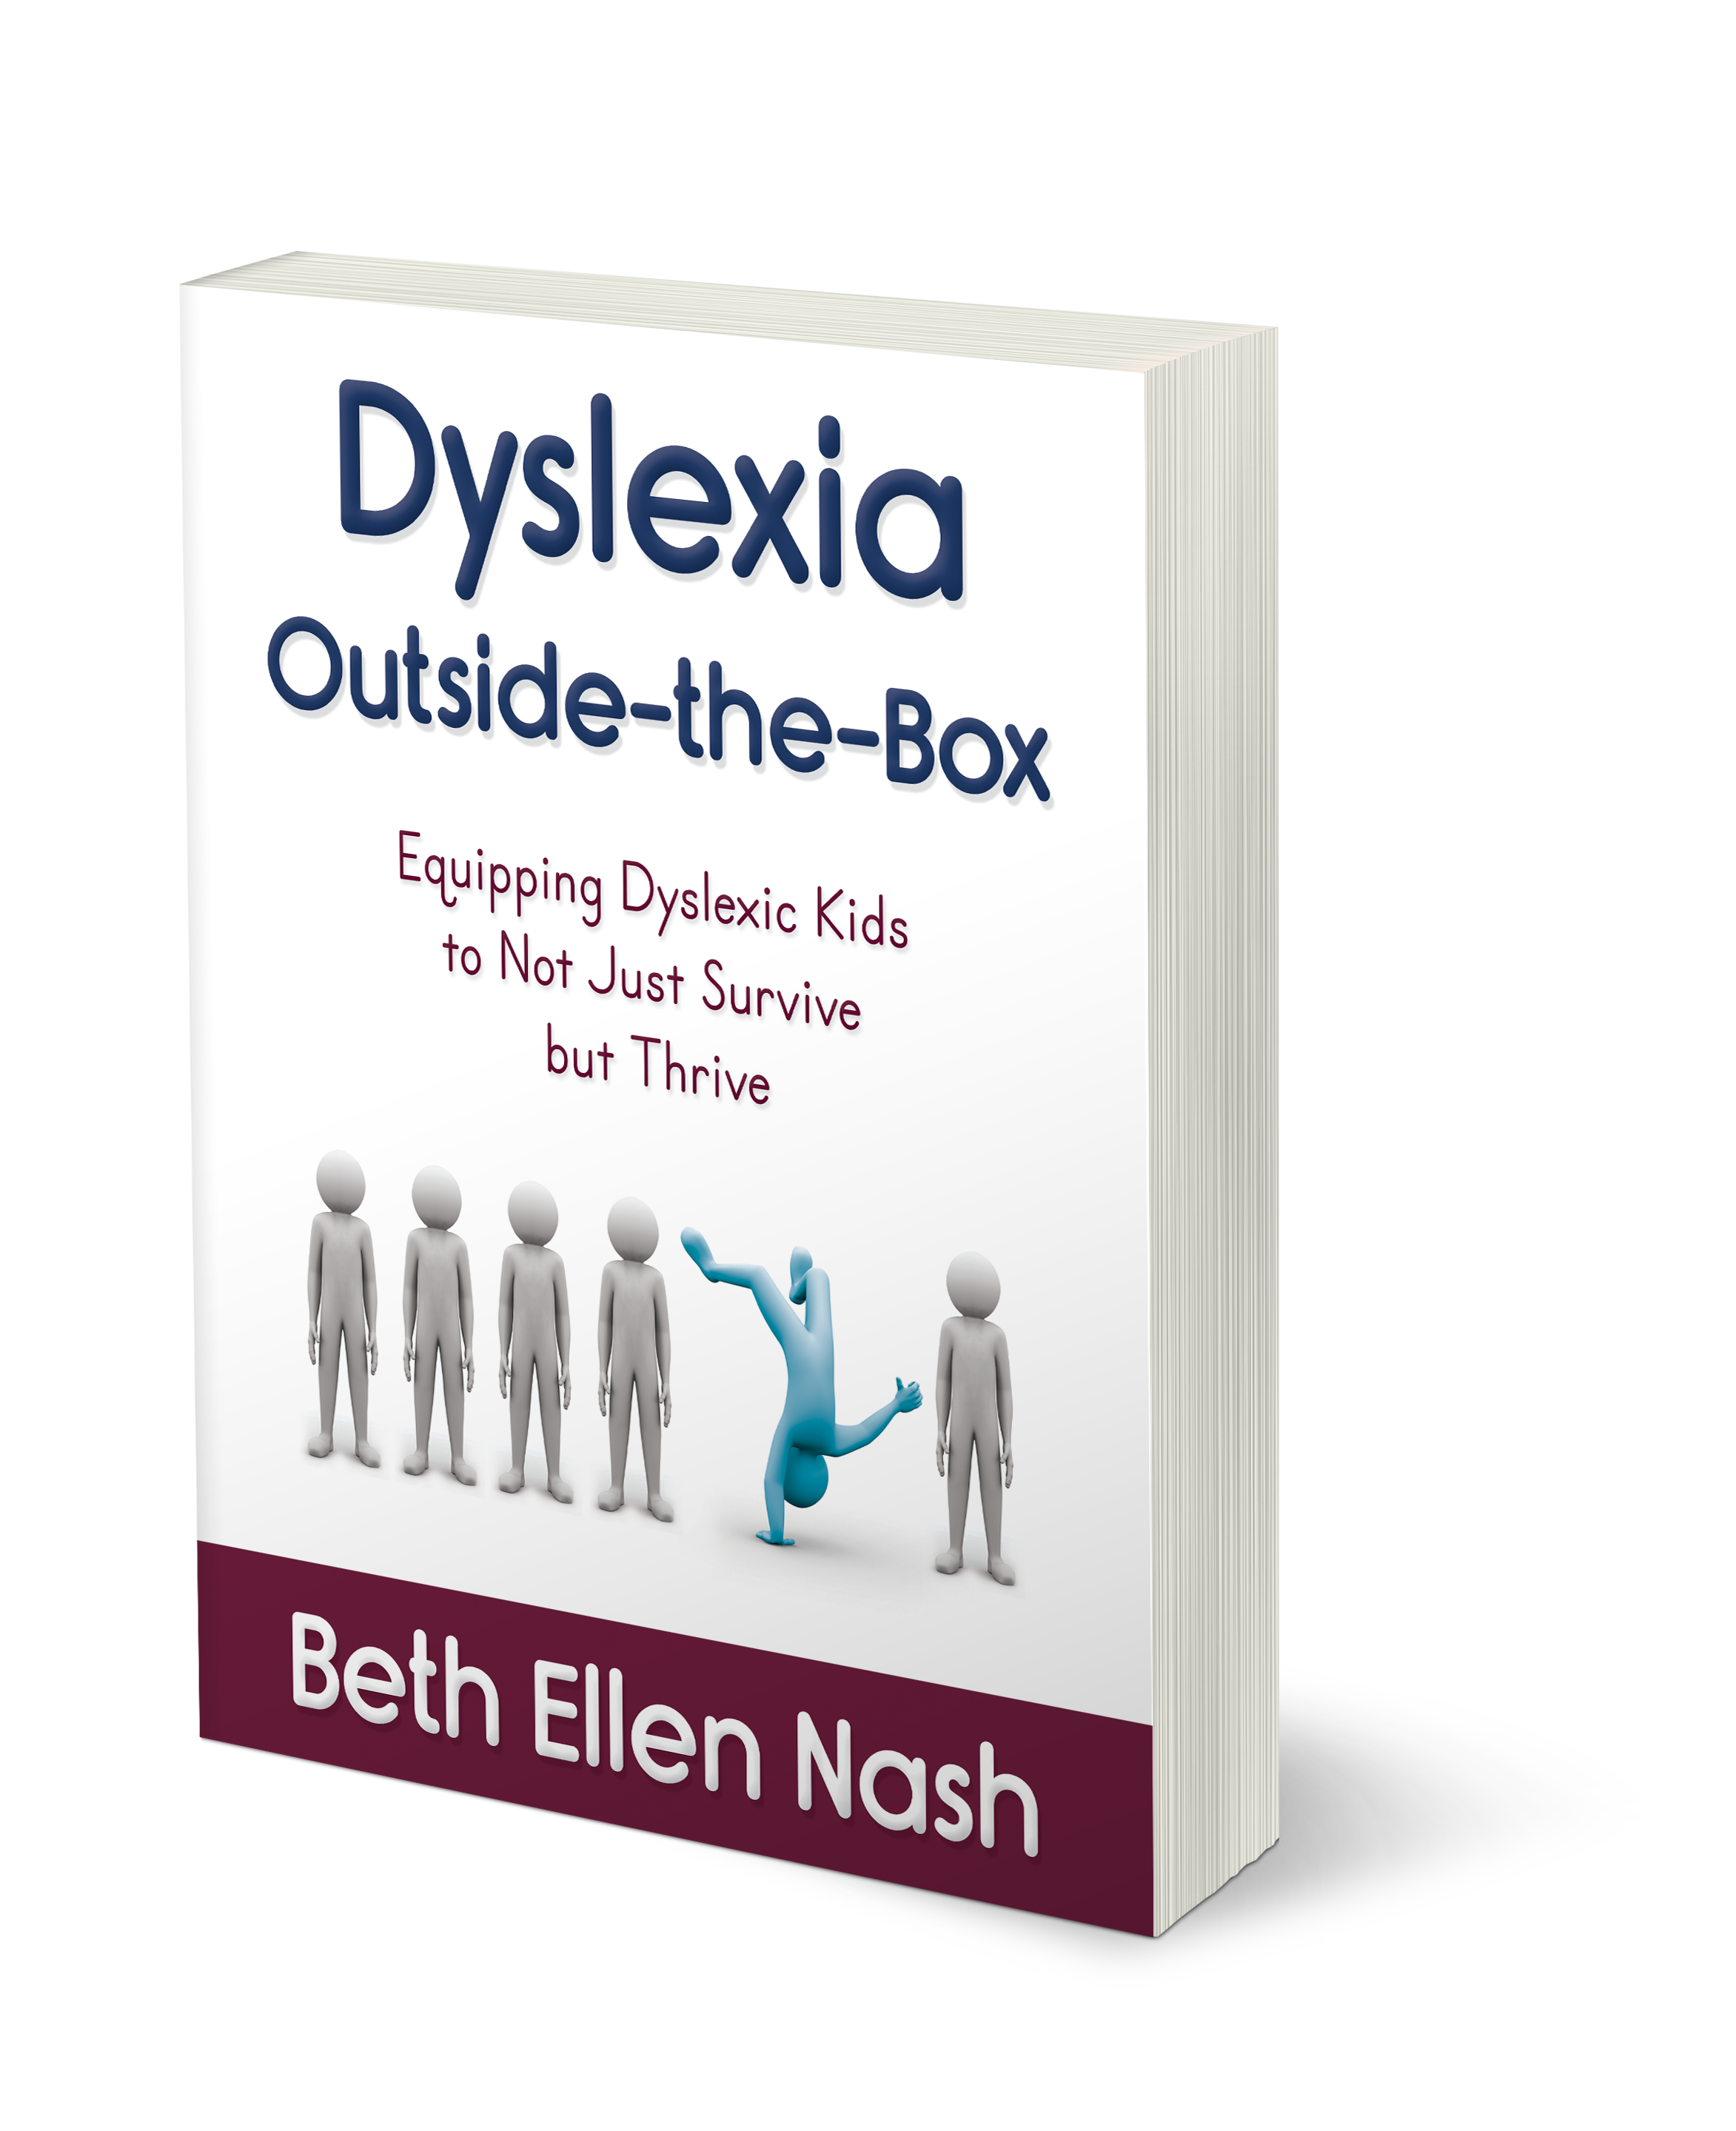 Help Dyslexic Kids Thrive – Dyslexia Outside-the-Box (Giveaway)